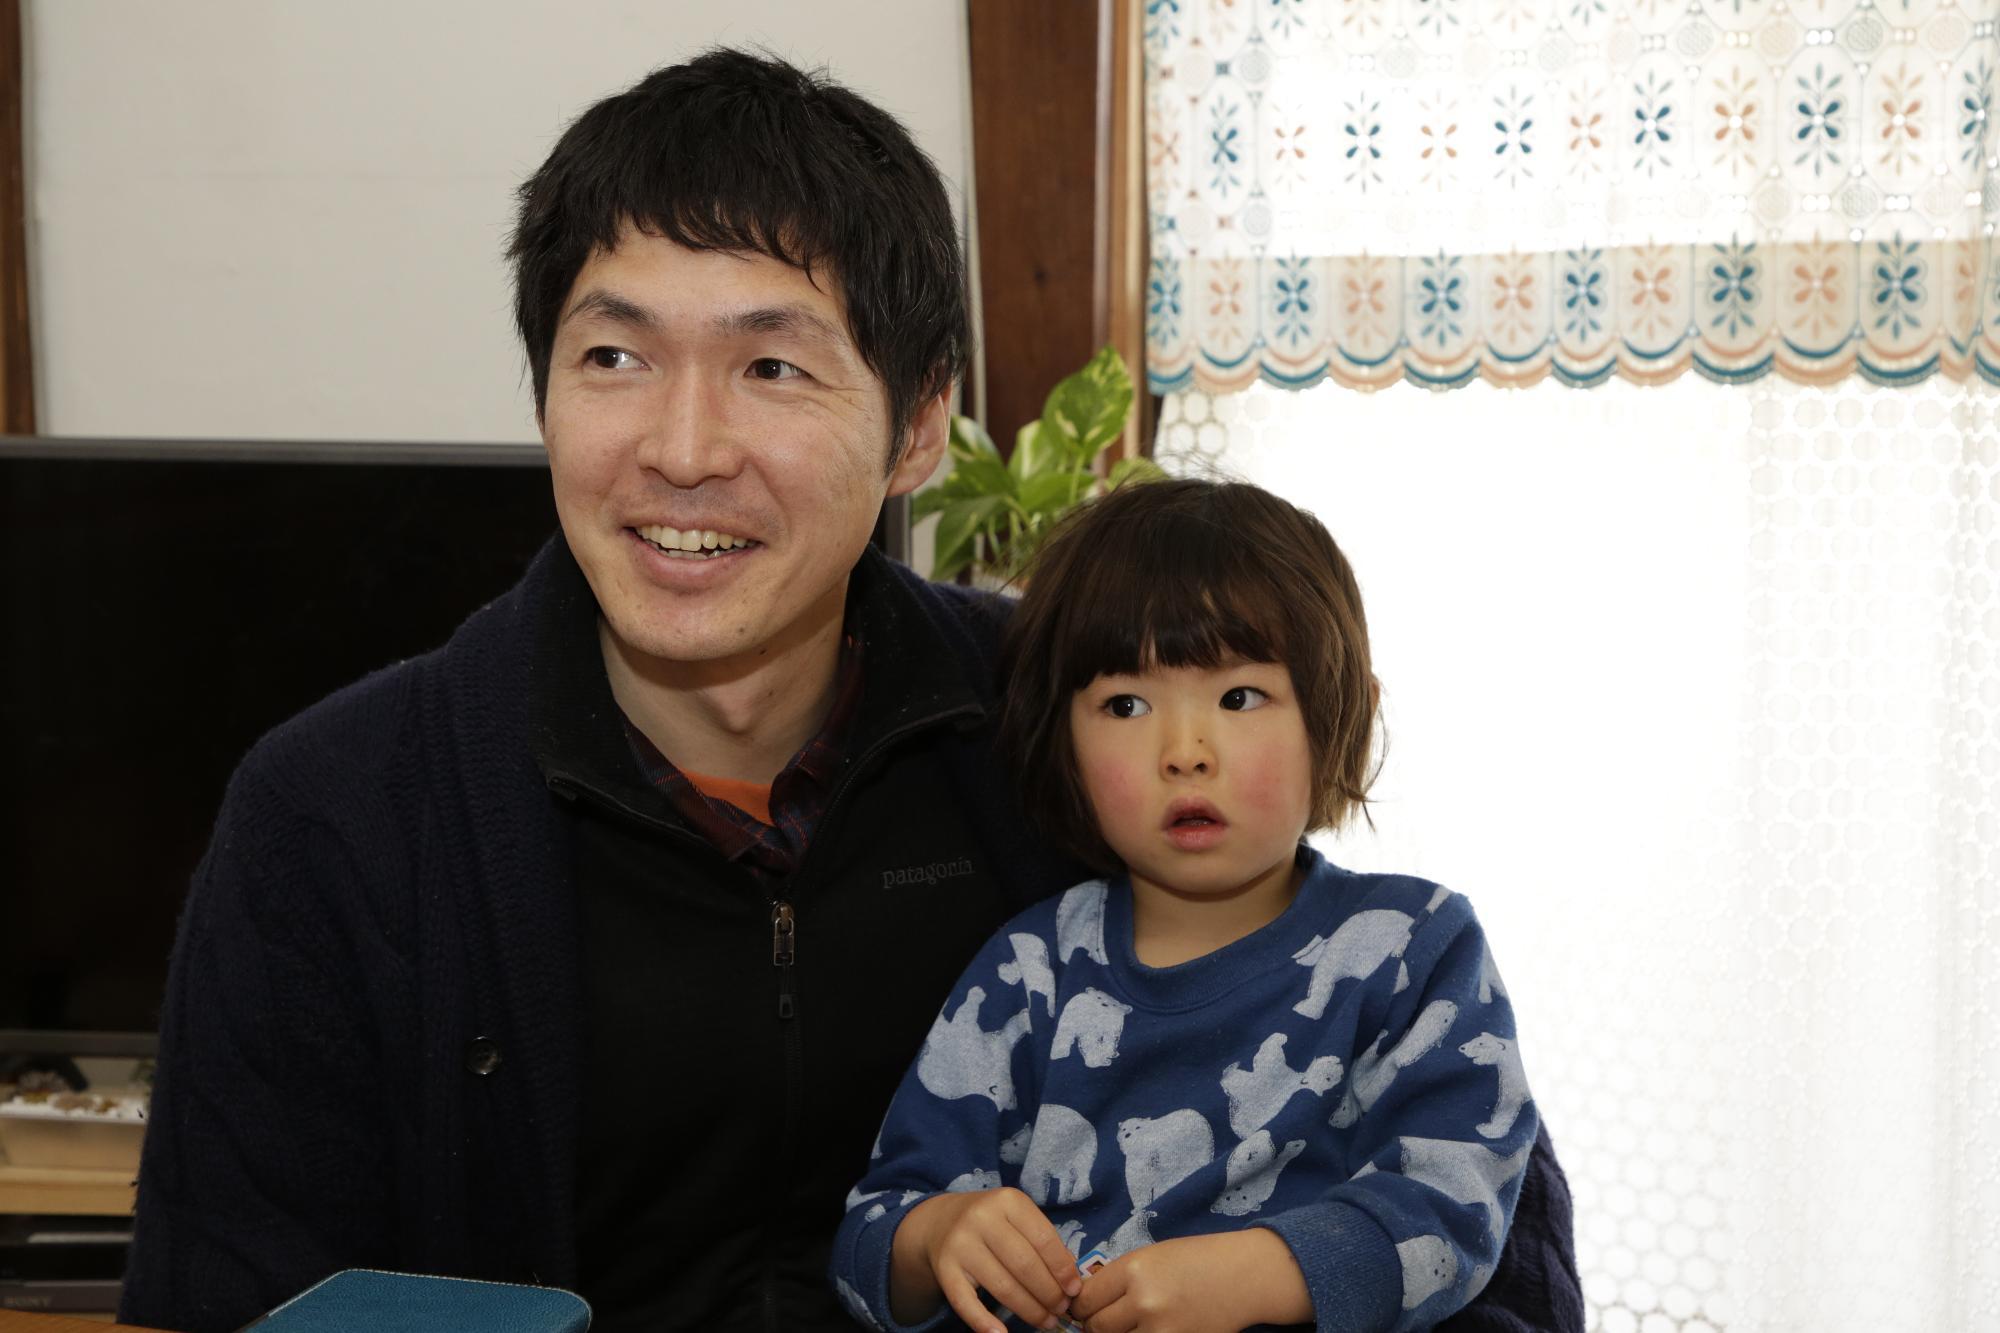 微笑む加藤さんとその子どもの写真